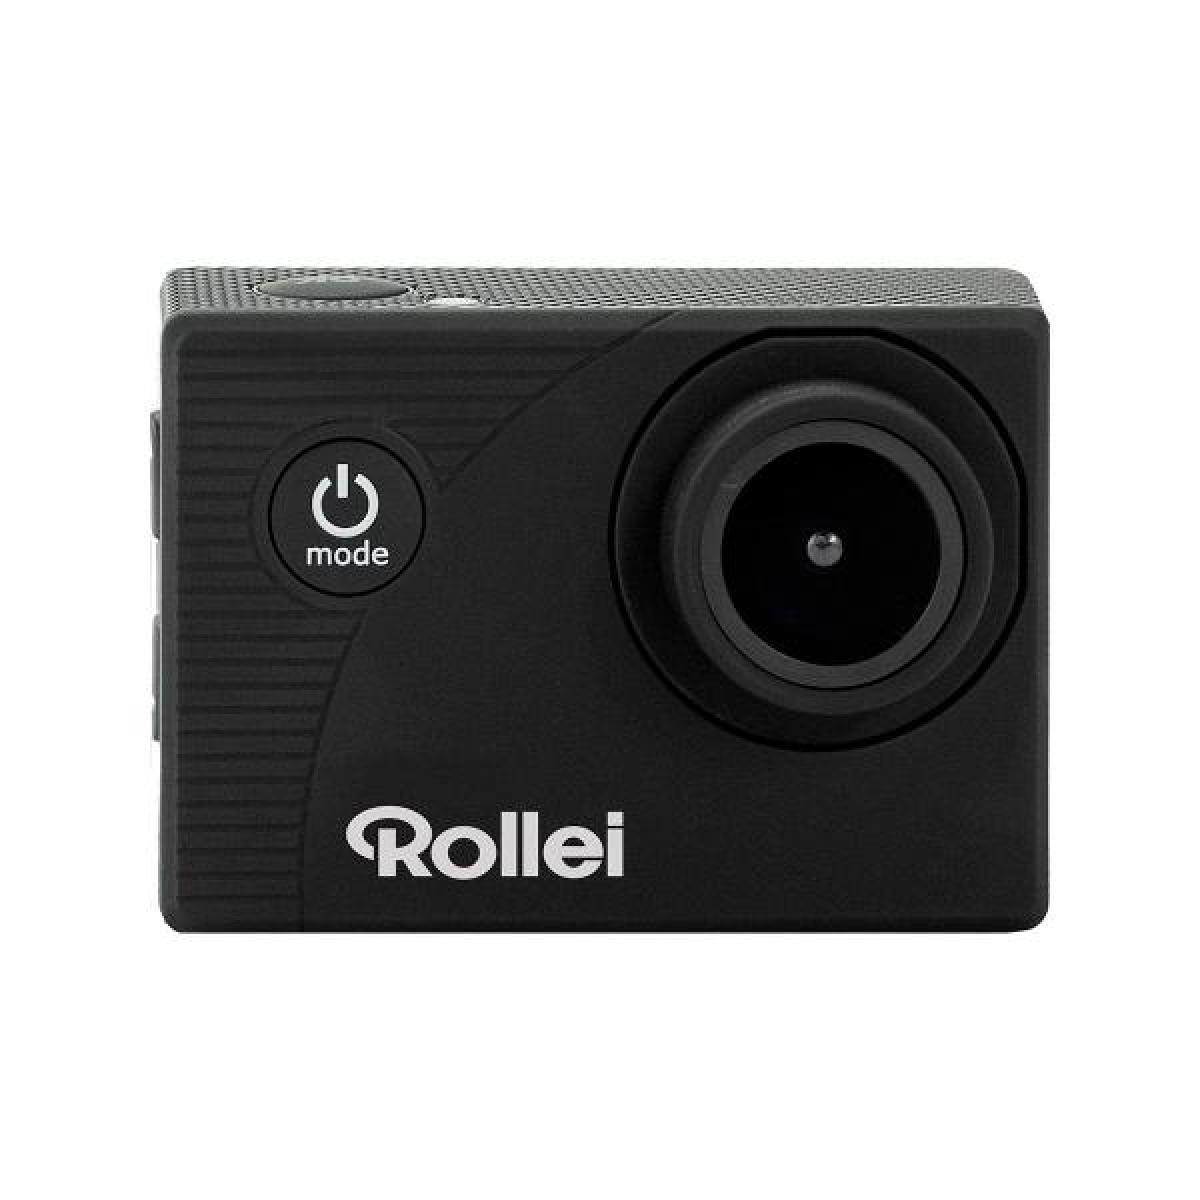 Rollei - Rollei Actioncam 372 Negra Cámara De Acción Vídeos En Full Hd 30fps 16mp Wifi Integrado Gran Angular 140º - Bracelet connecté